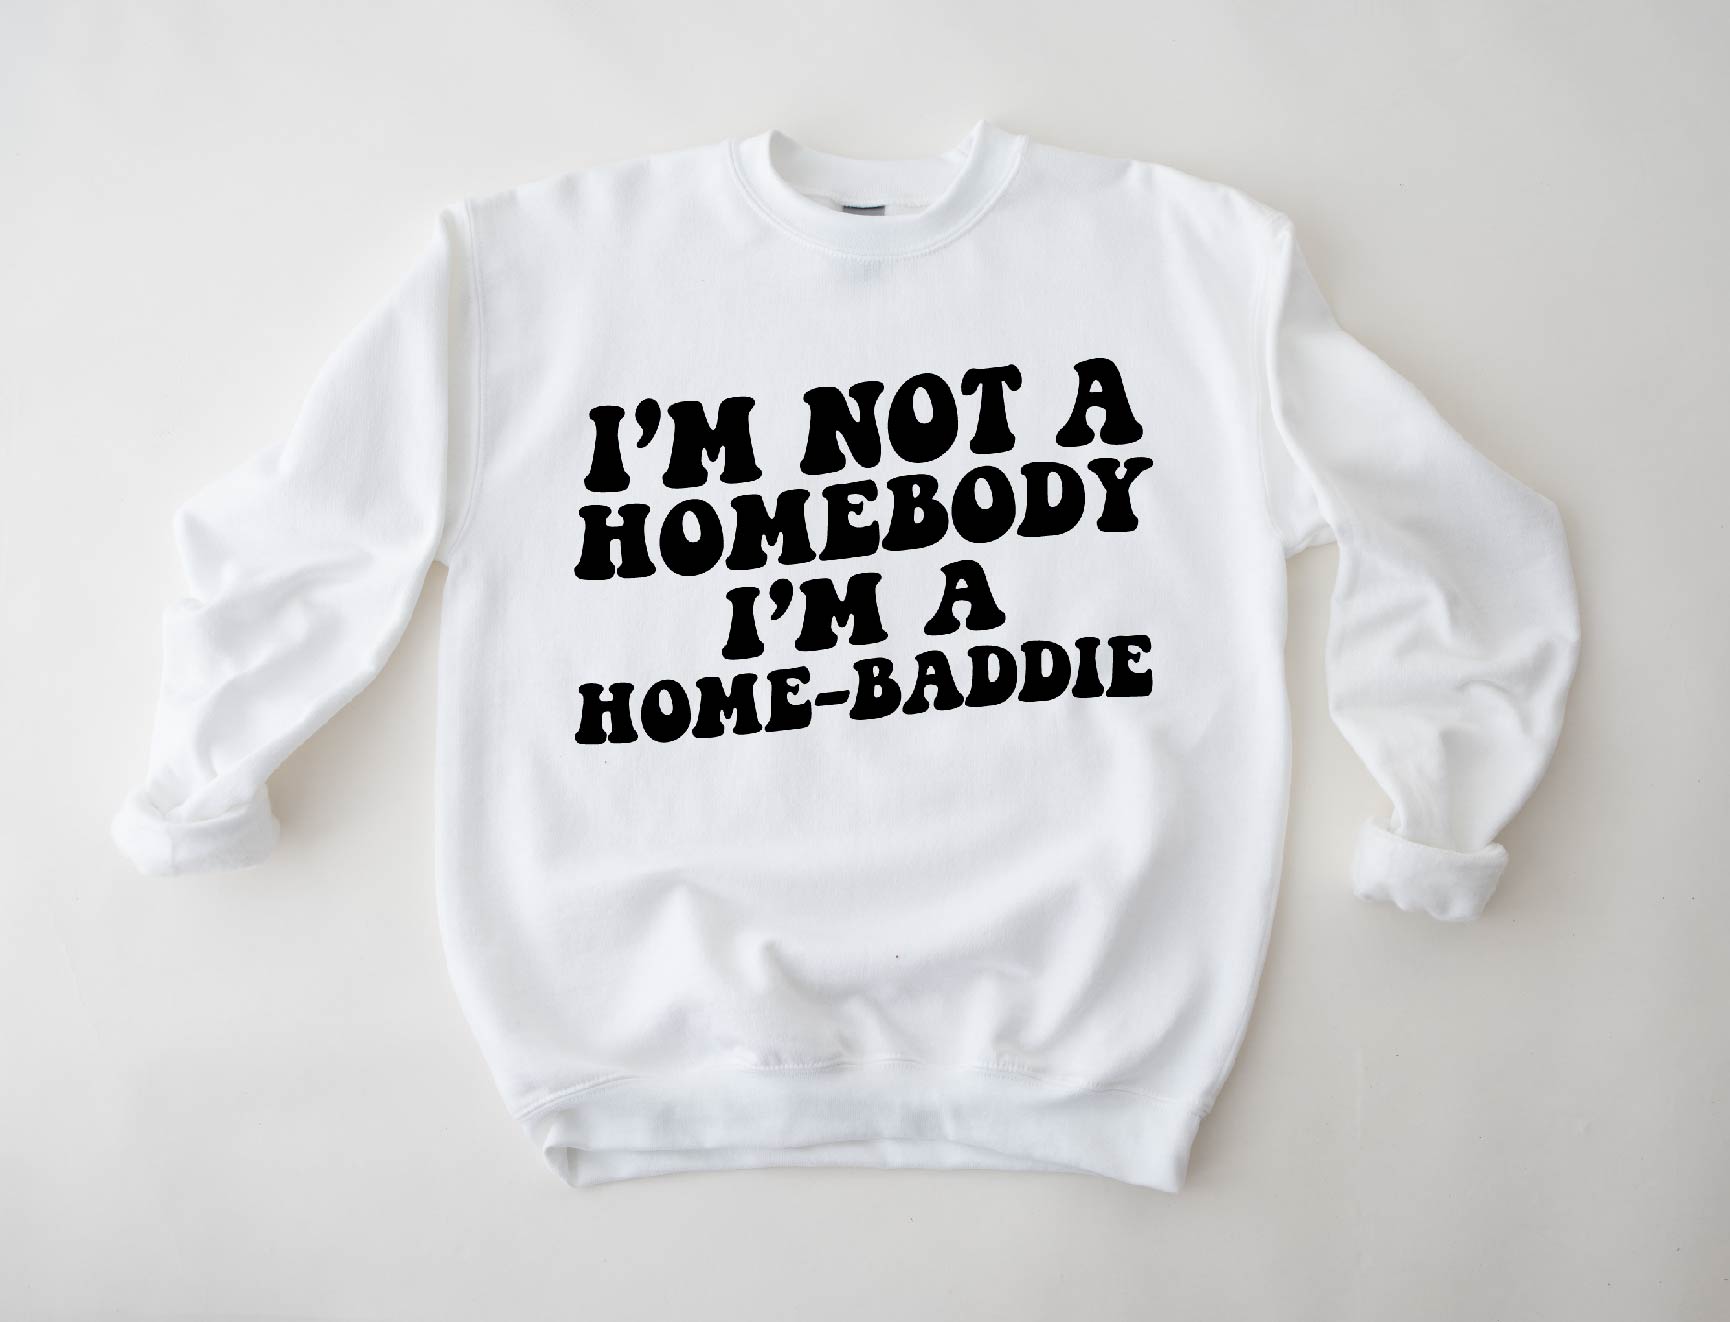 Home-Baddie